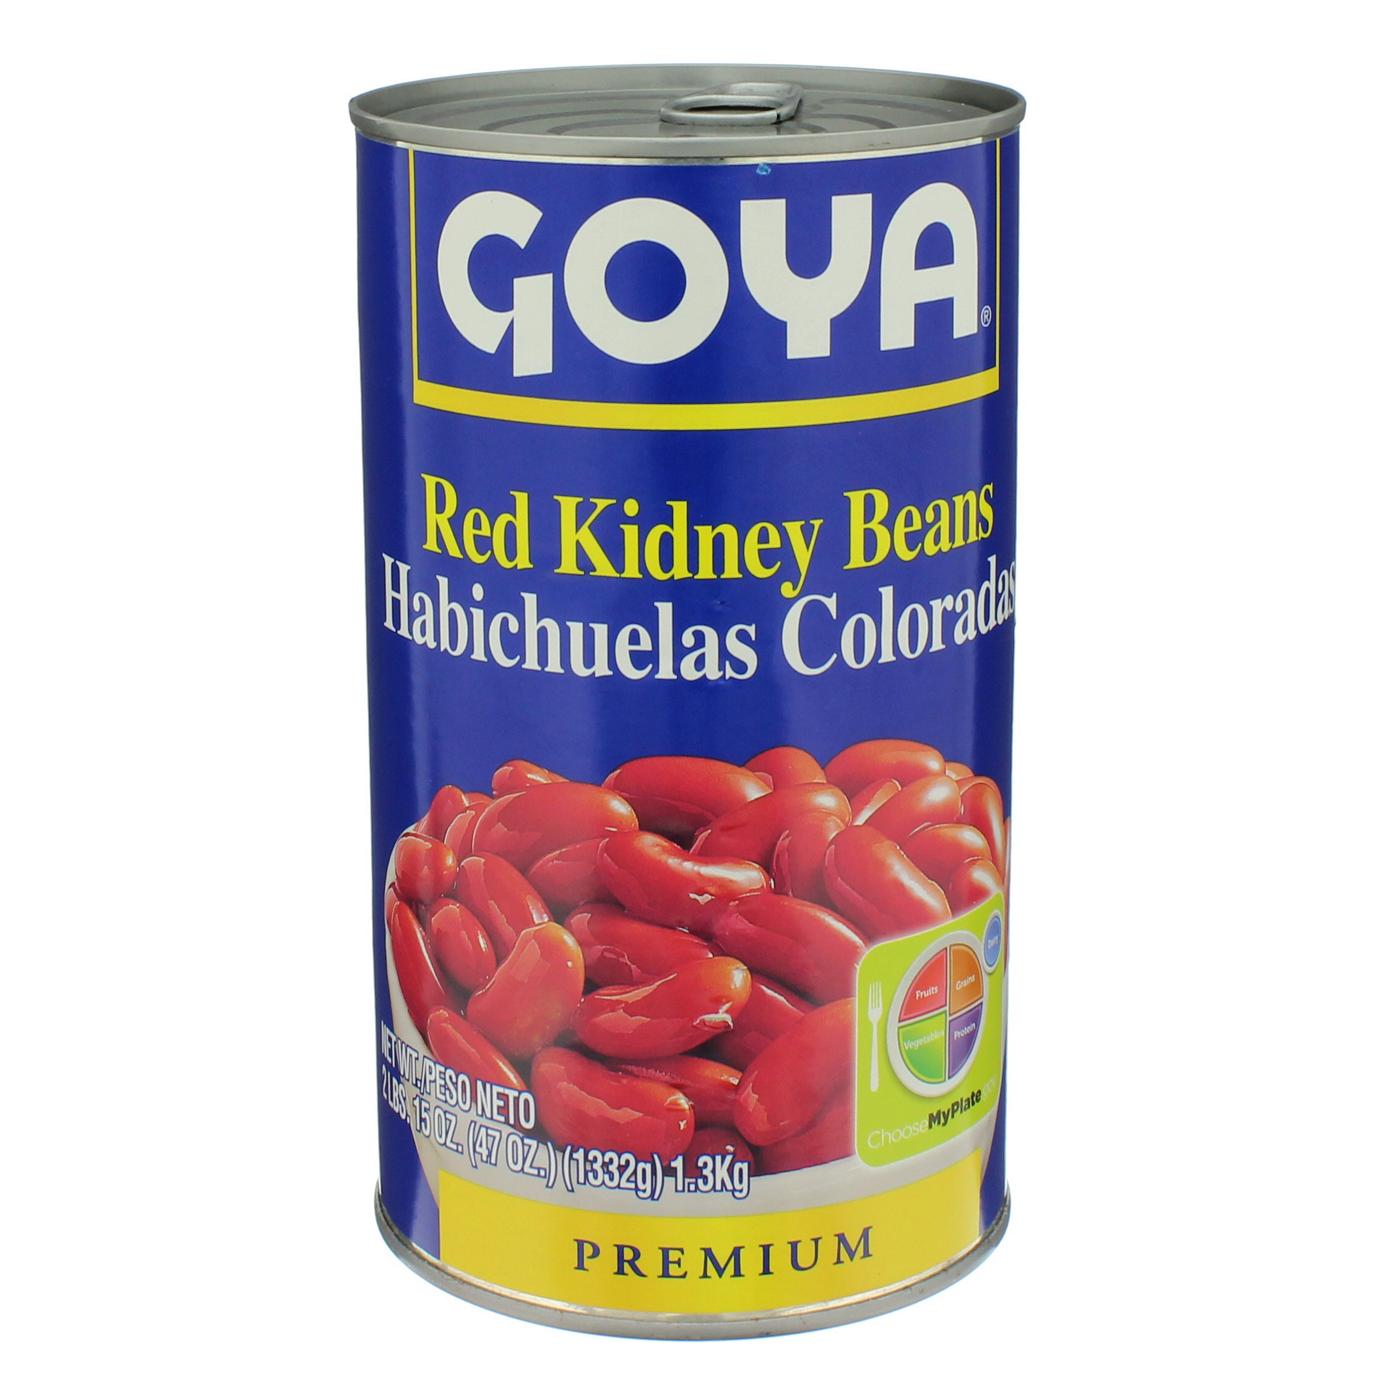 Goya Red Kidney Beans; image 1 of 2